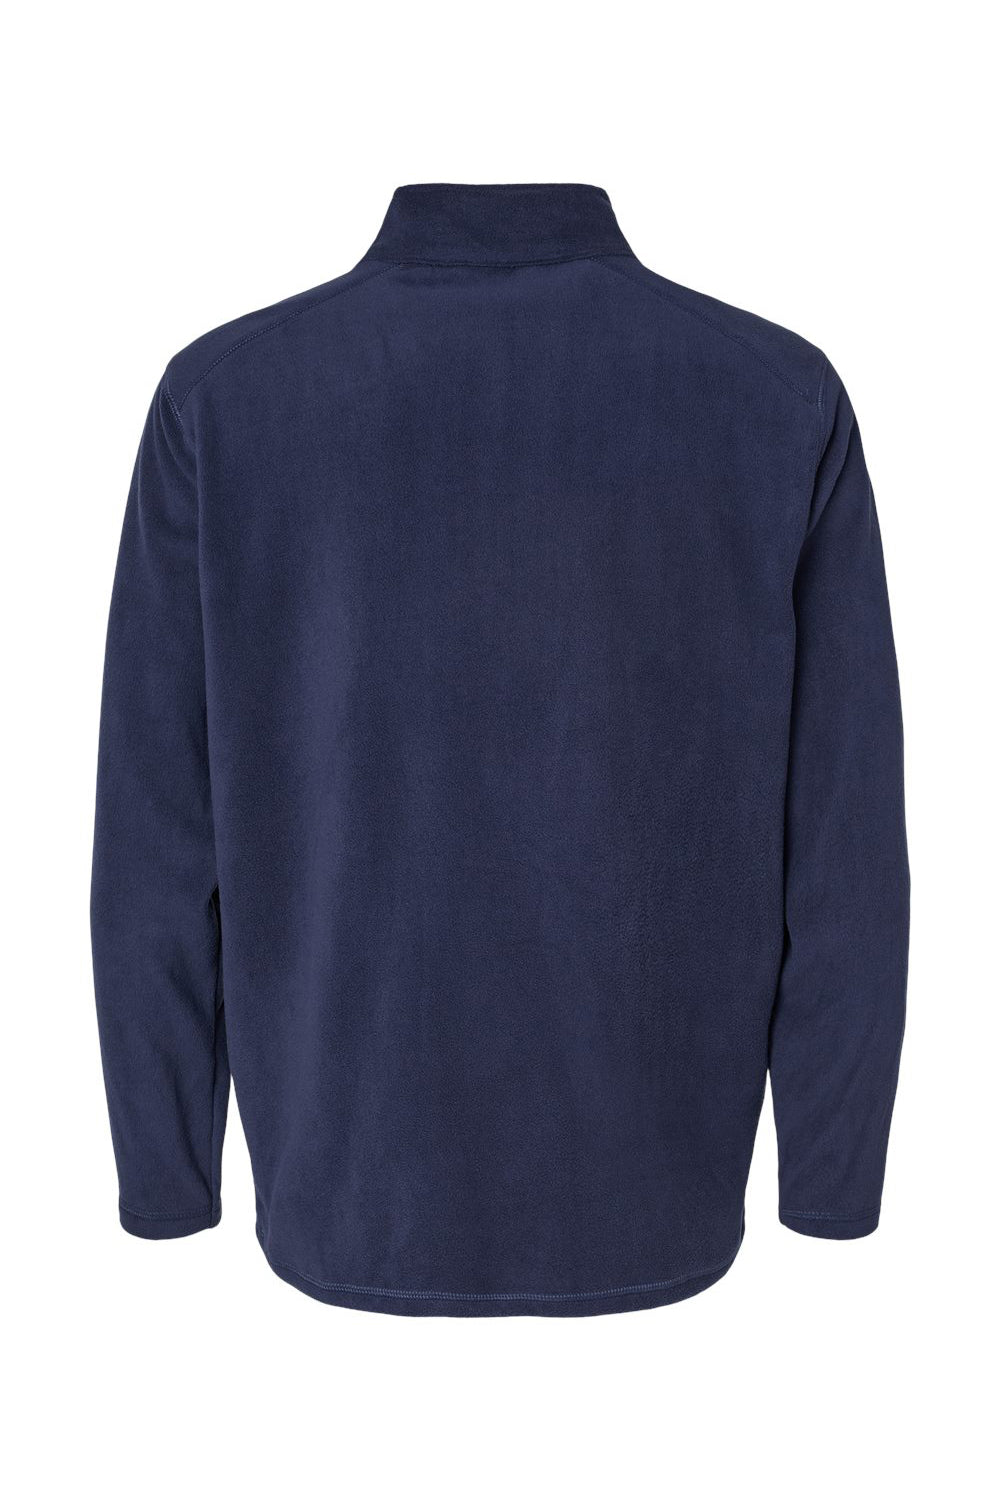 Augusta Sportswear 6863 Mens Eco Revive Micro Lite Fleece 1/4 Zip Sweatshirt Navy Blue Flat Back